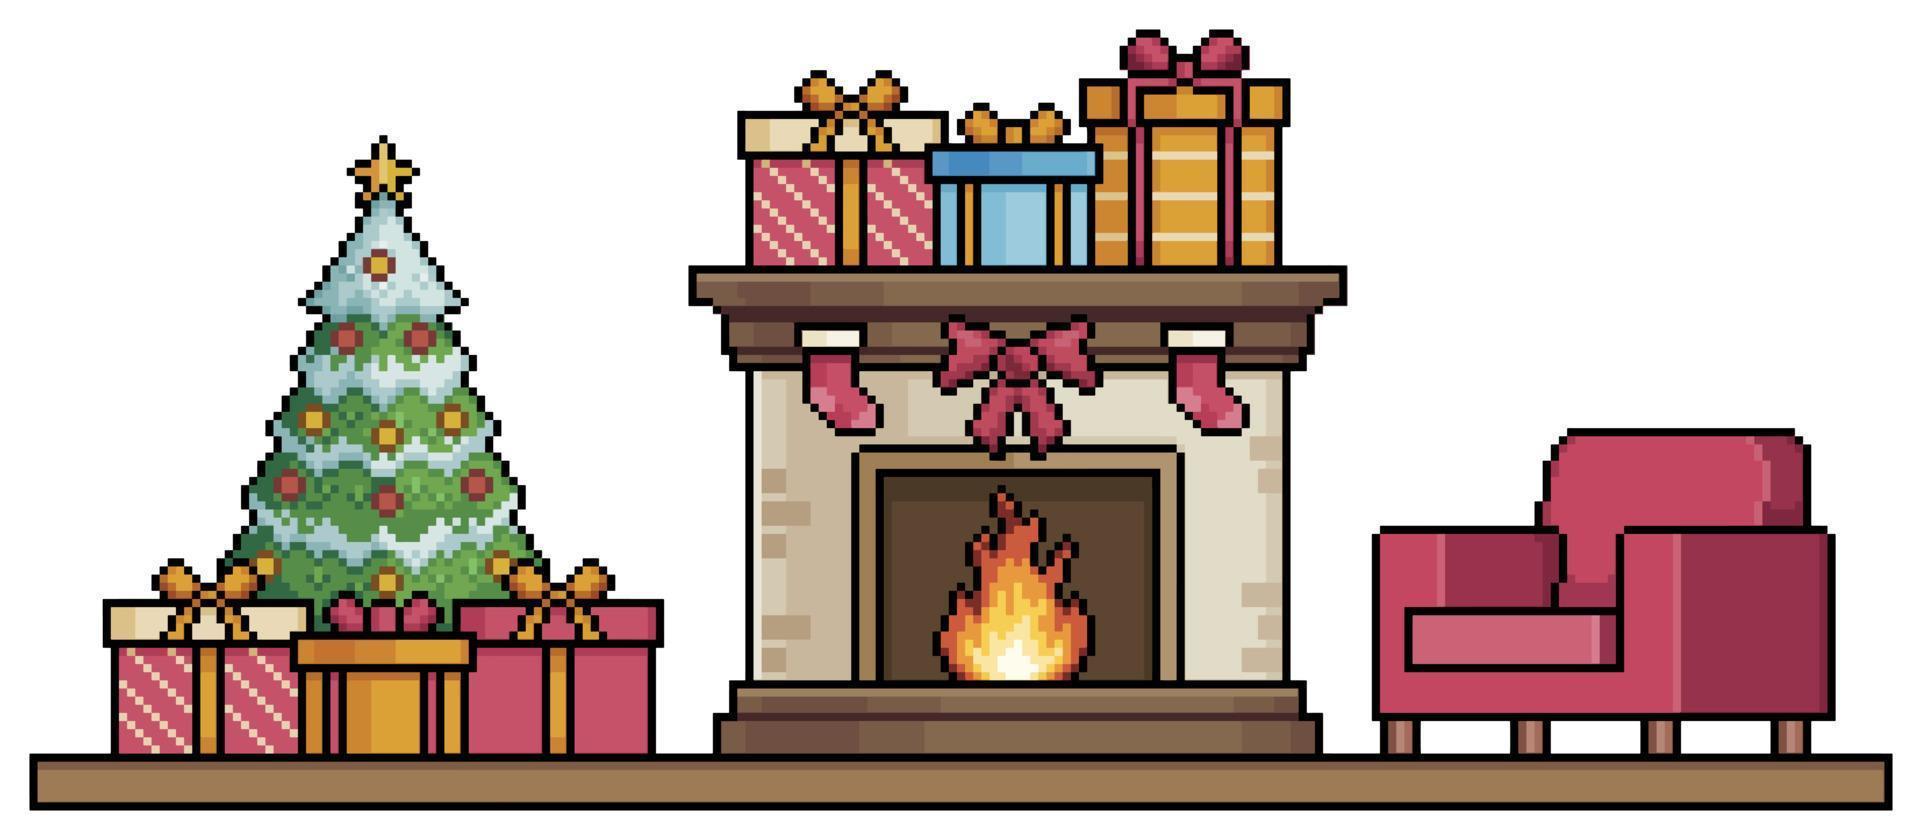 Pixelkunstkamin, Weihnachtsbaum, Geschenke und Sesselhintergrundvektor für 8-Bit-Spiel vektor